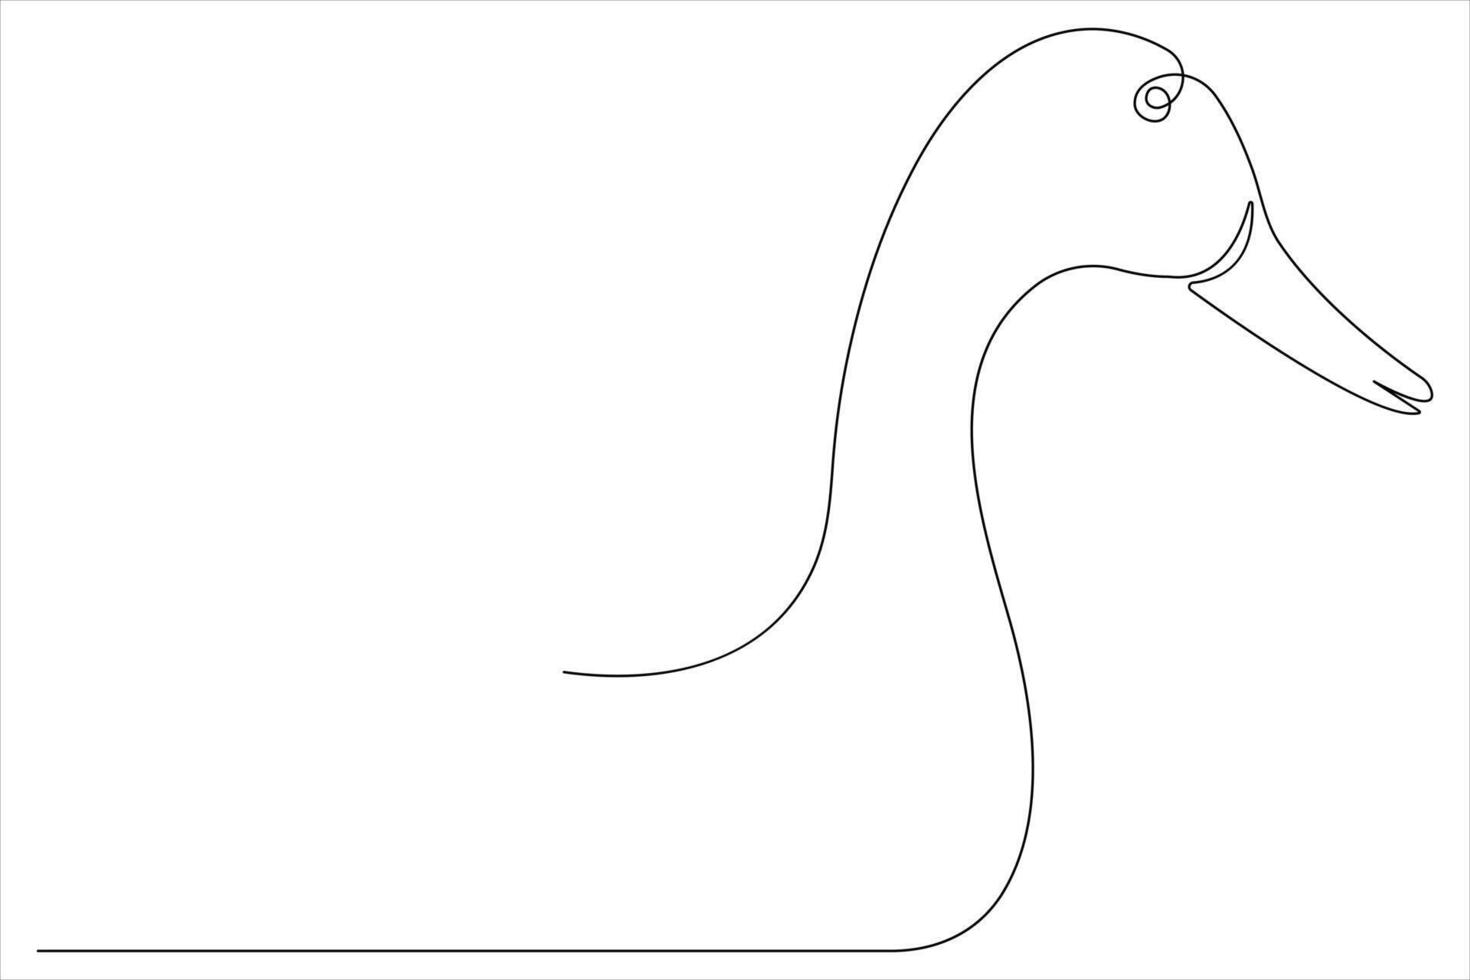 kontinuerlig enda linje konst teckning av sällskapsdjur djur- Anka begrepp översikt vektor illustration